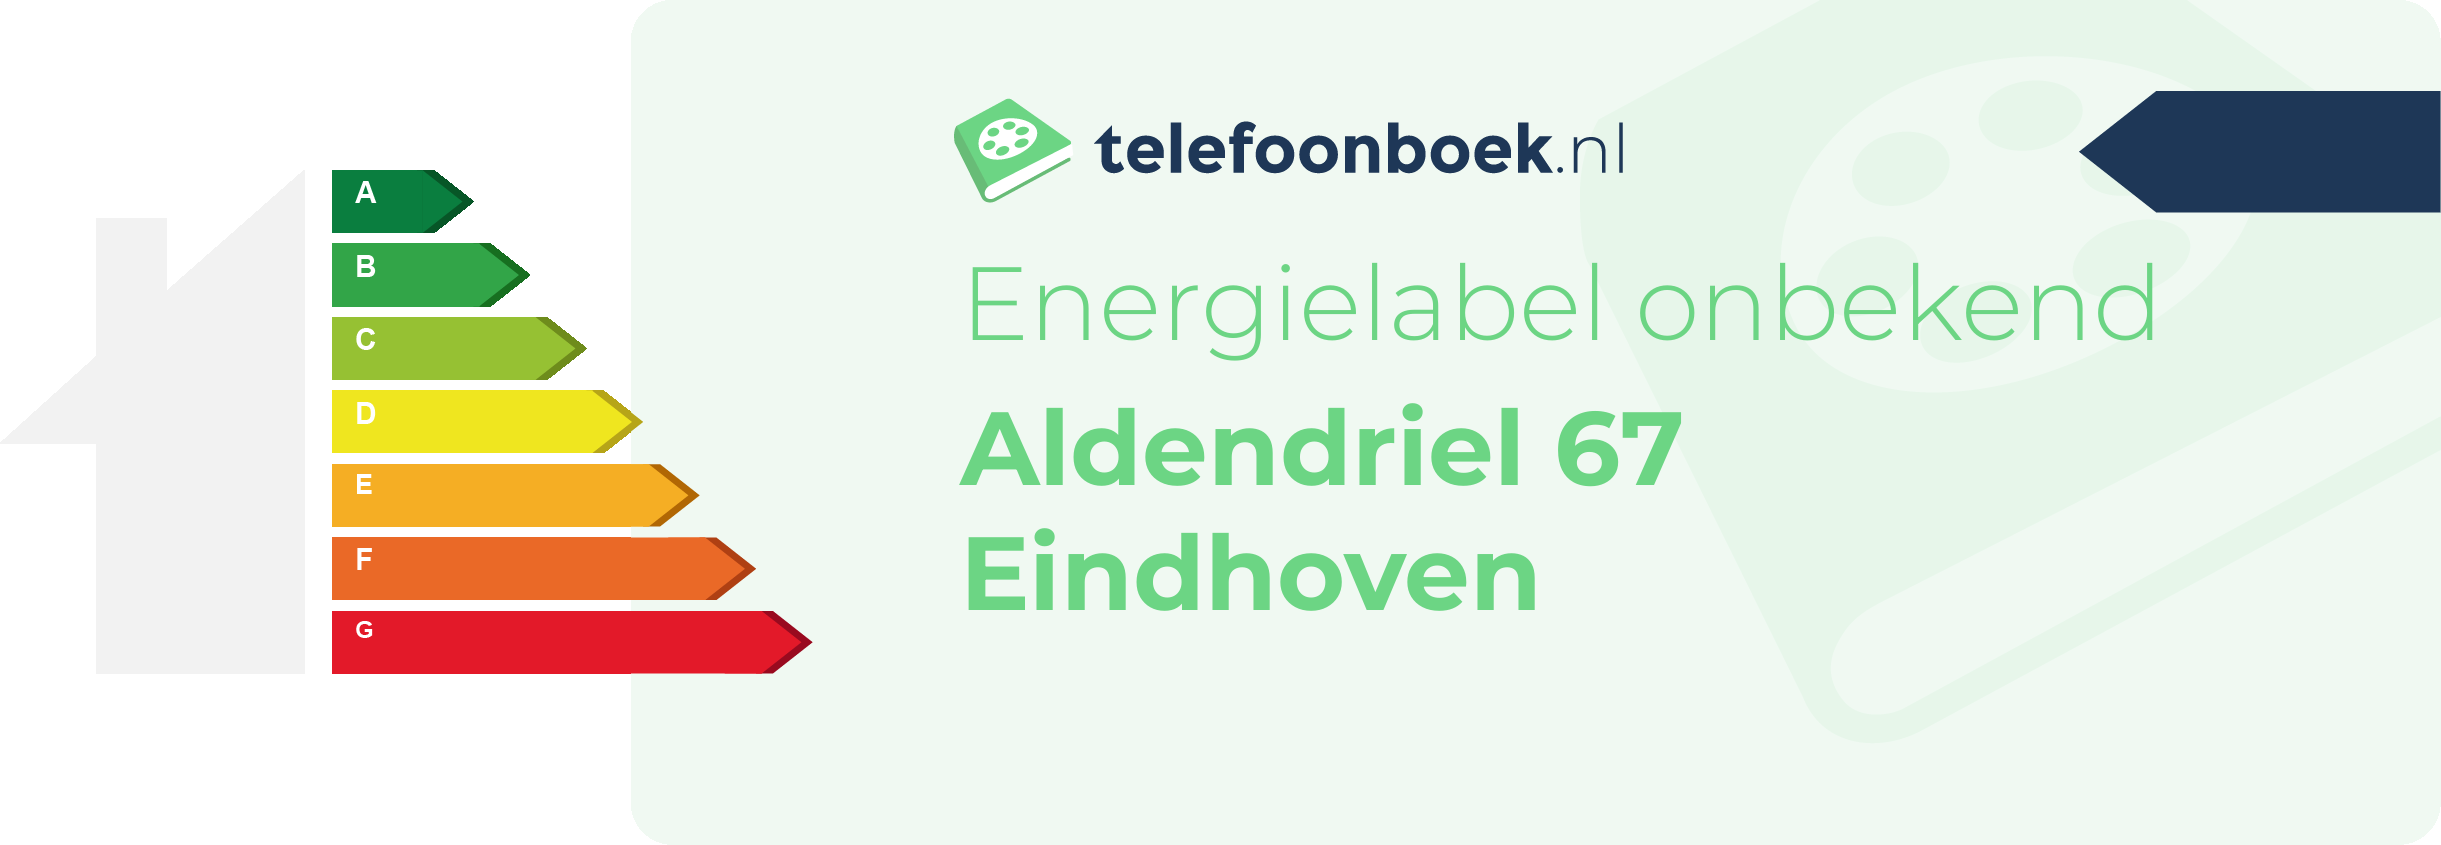 Energielabel Aldendriel 67 Eindhoven